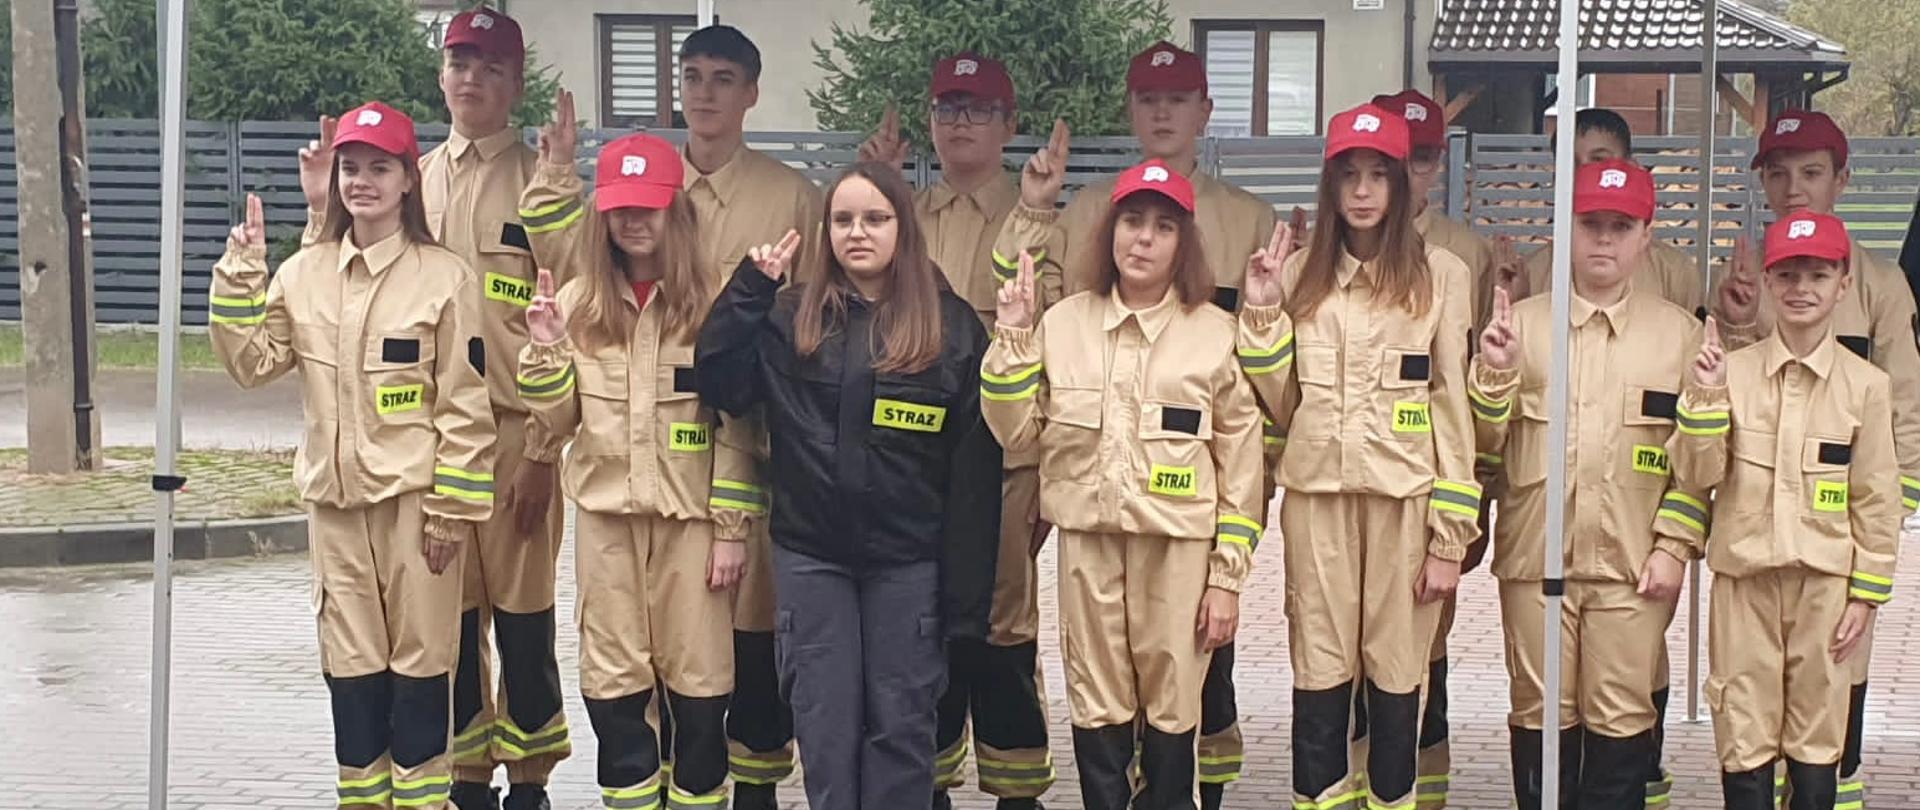 14 członków Młodzieżowej Drużyny Pożarniczej działającej przy Ochotniczej Straży Pożarnej w trakcie składania ślubowania.